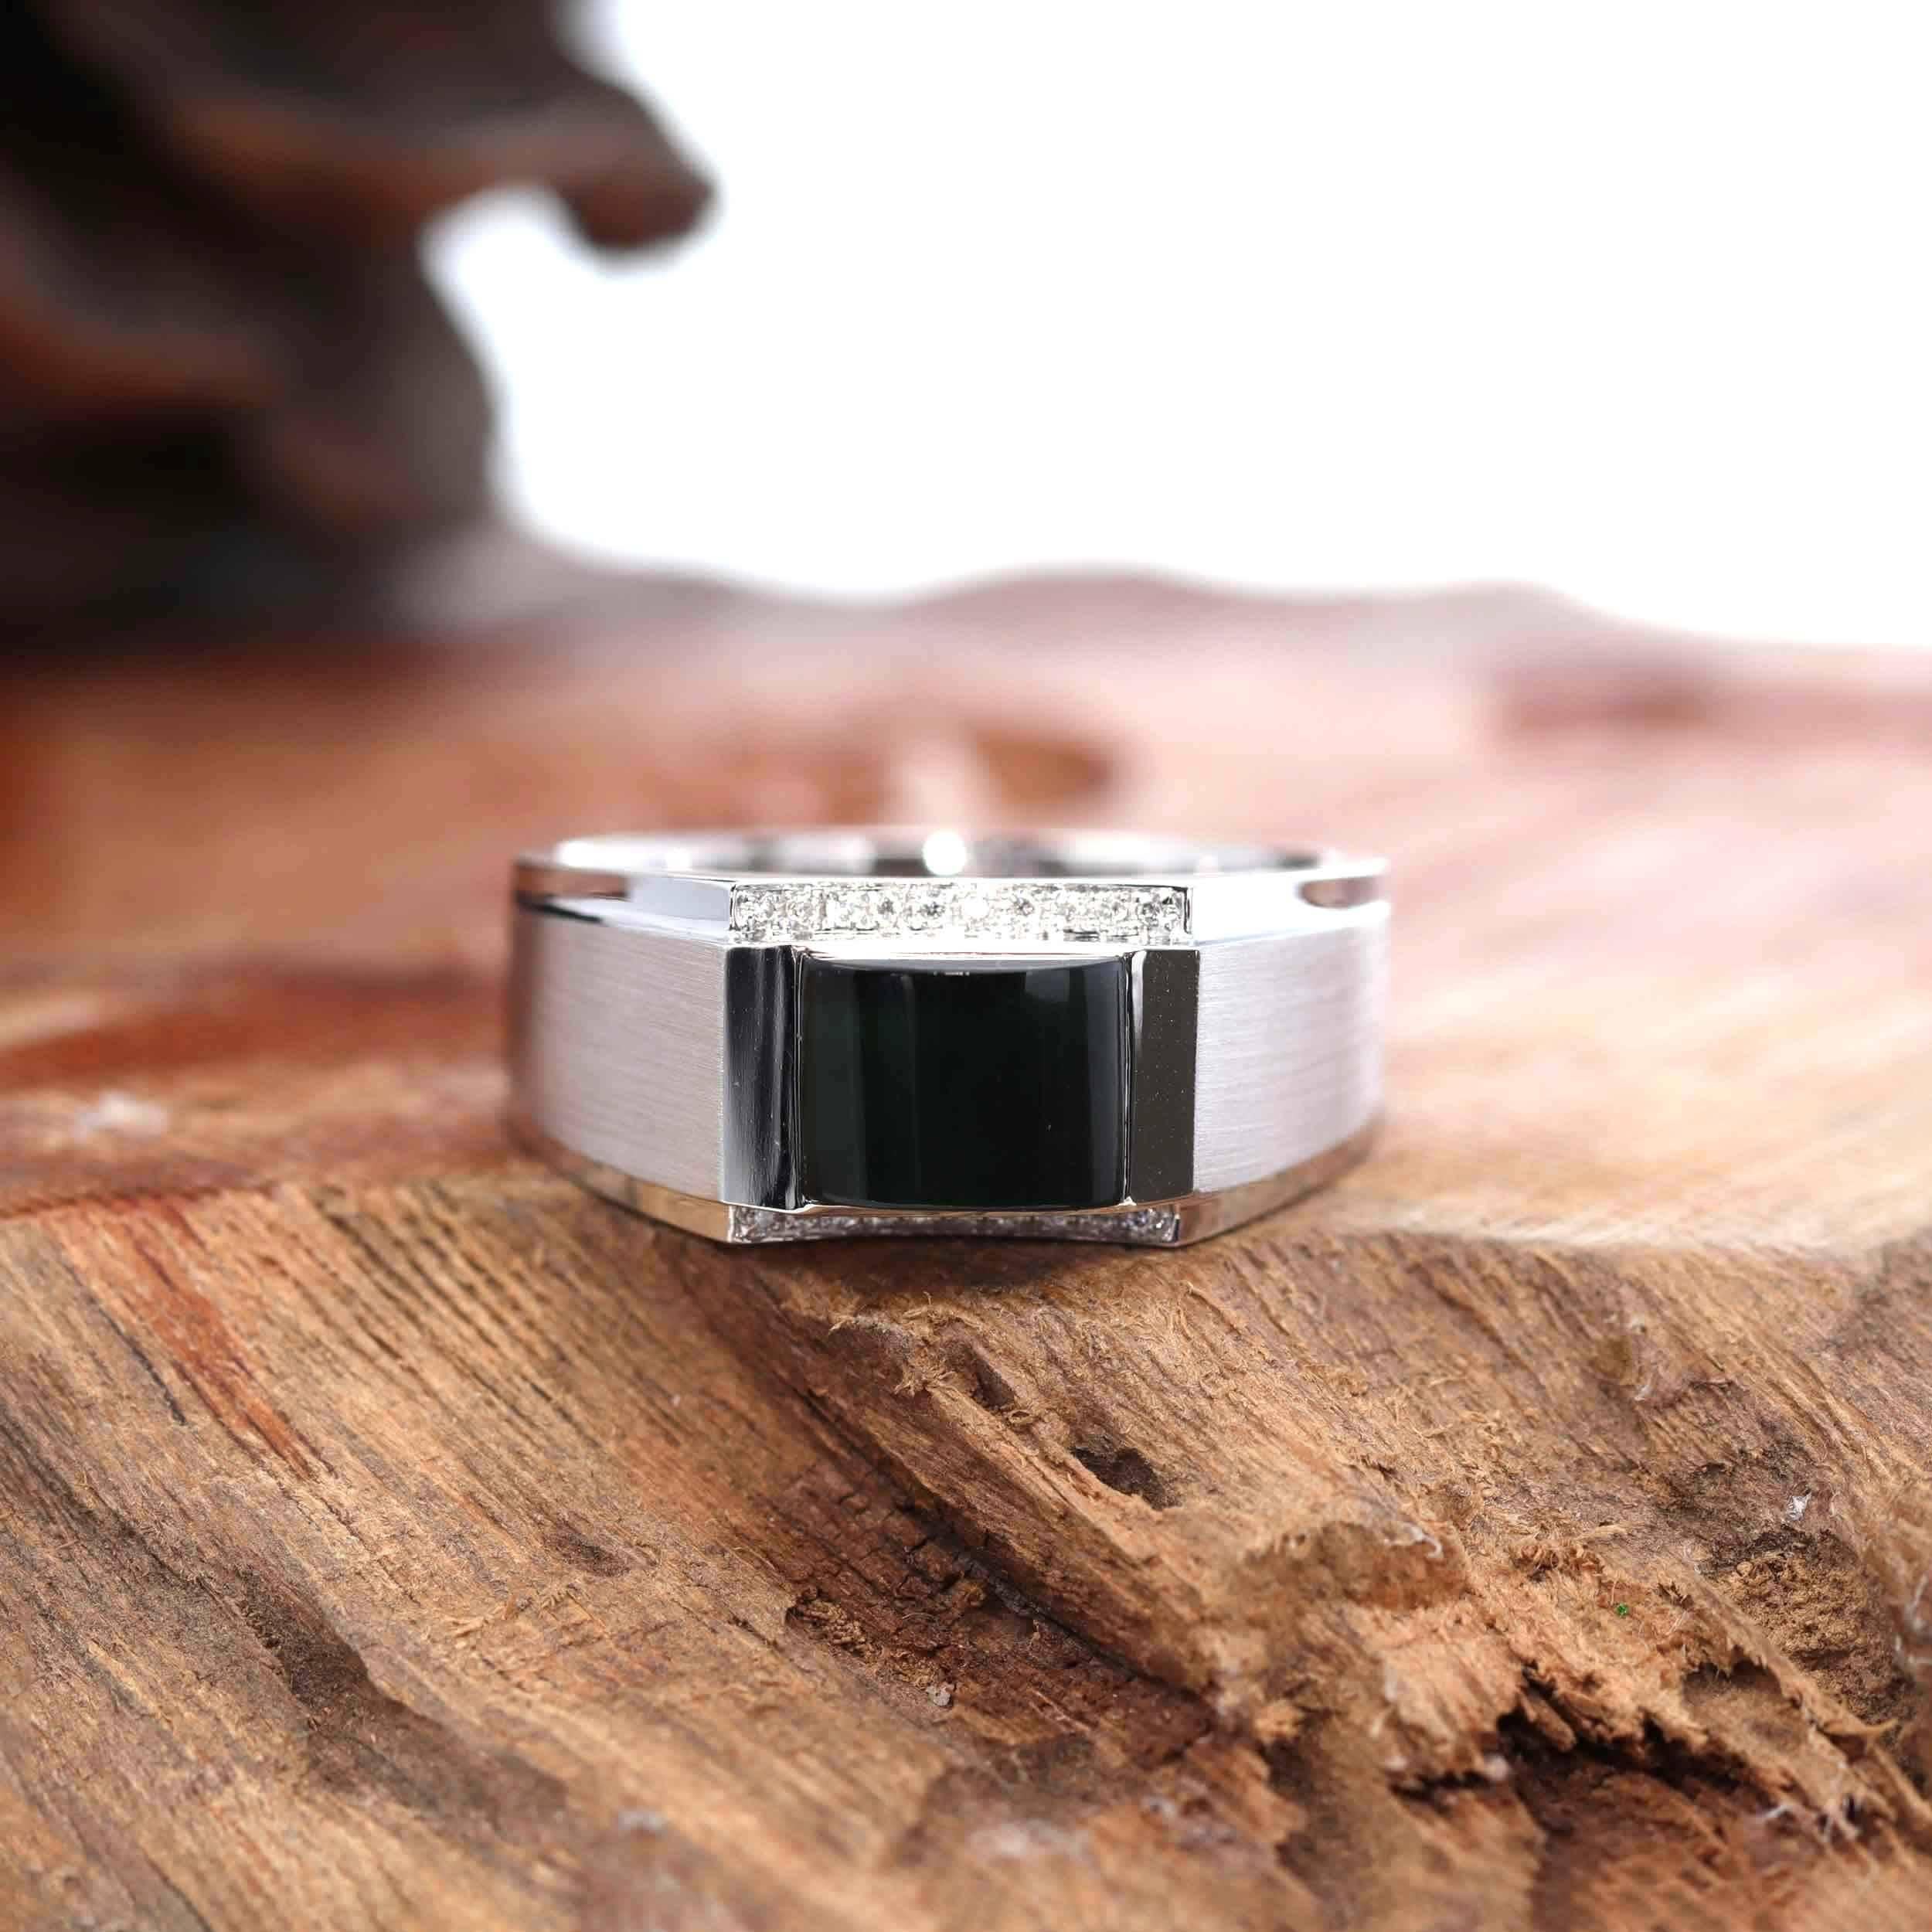 * Designkonzept---  Dieser Ring ist aus echter burmesischer schwarzer Jadeit-Jade von hoher Qualität gefertigt. Die schwarze Jadeit-Jade zeigt unter dem Licht tatsächlich die smaragdgrüne Farbe. Lünettenfassung mit Smaragdschliff und einzigartigem